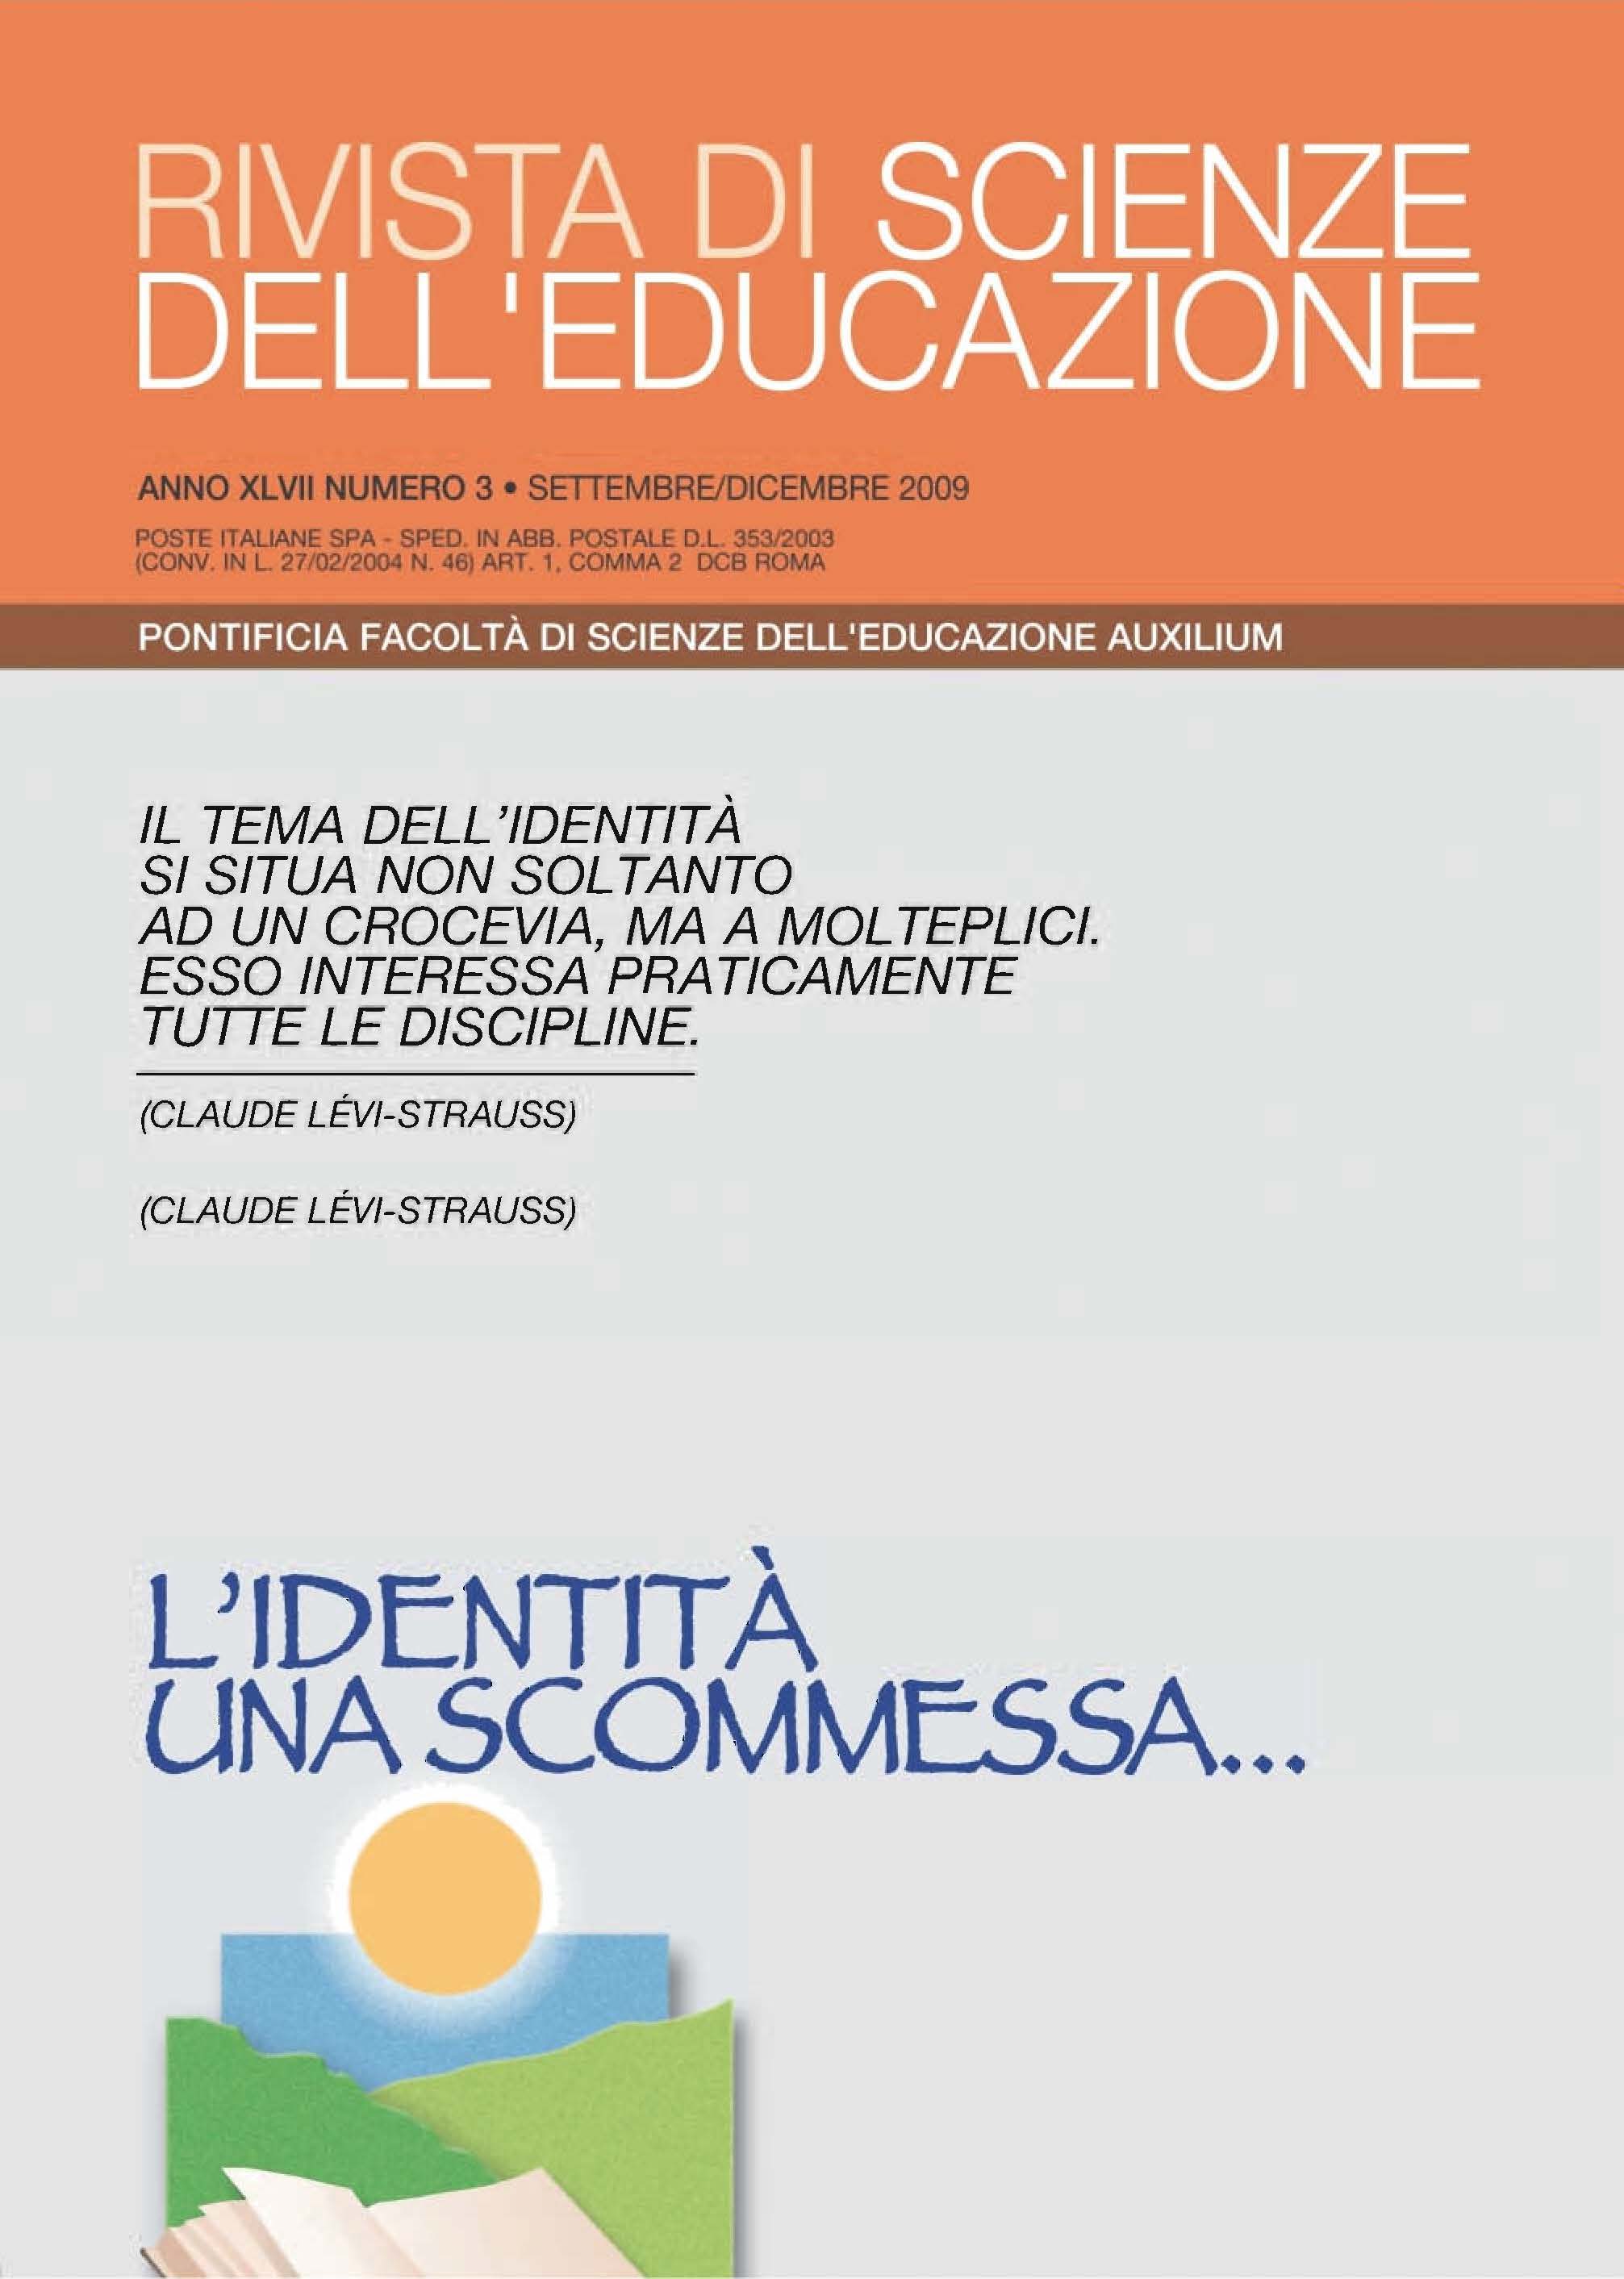 Francesco Motto,Guglielmo Malizia – L'evoluzione dell'opera salesiana in  Italia. Dati quantitativi 1861-2010. – Salesian OnLine Resources